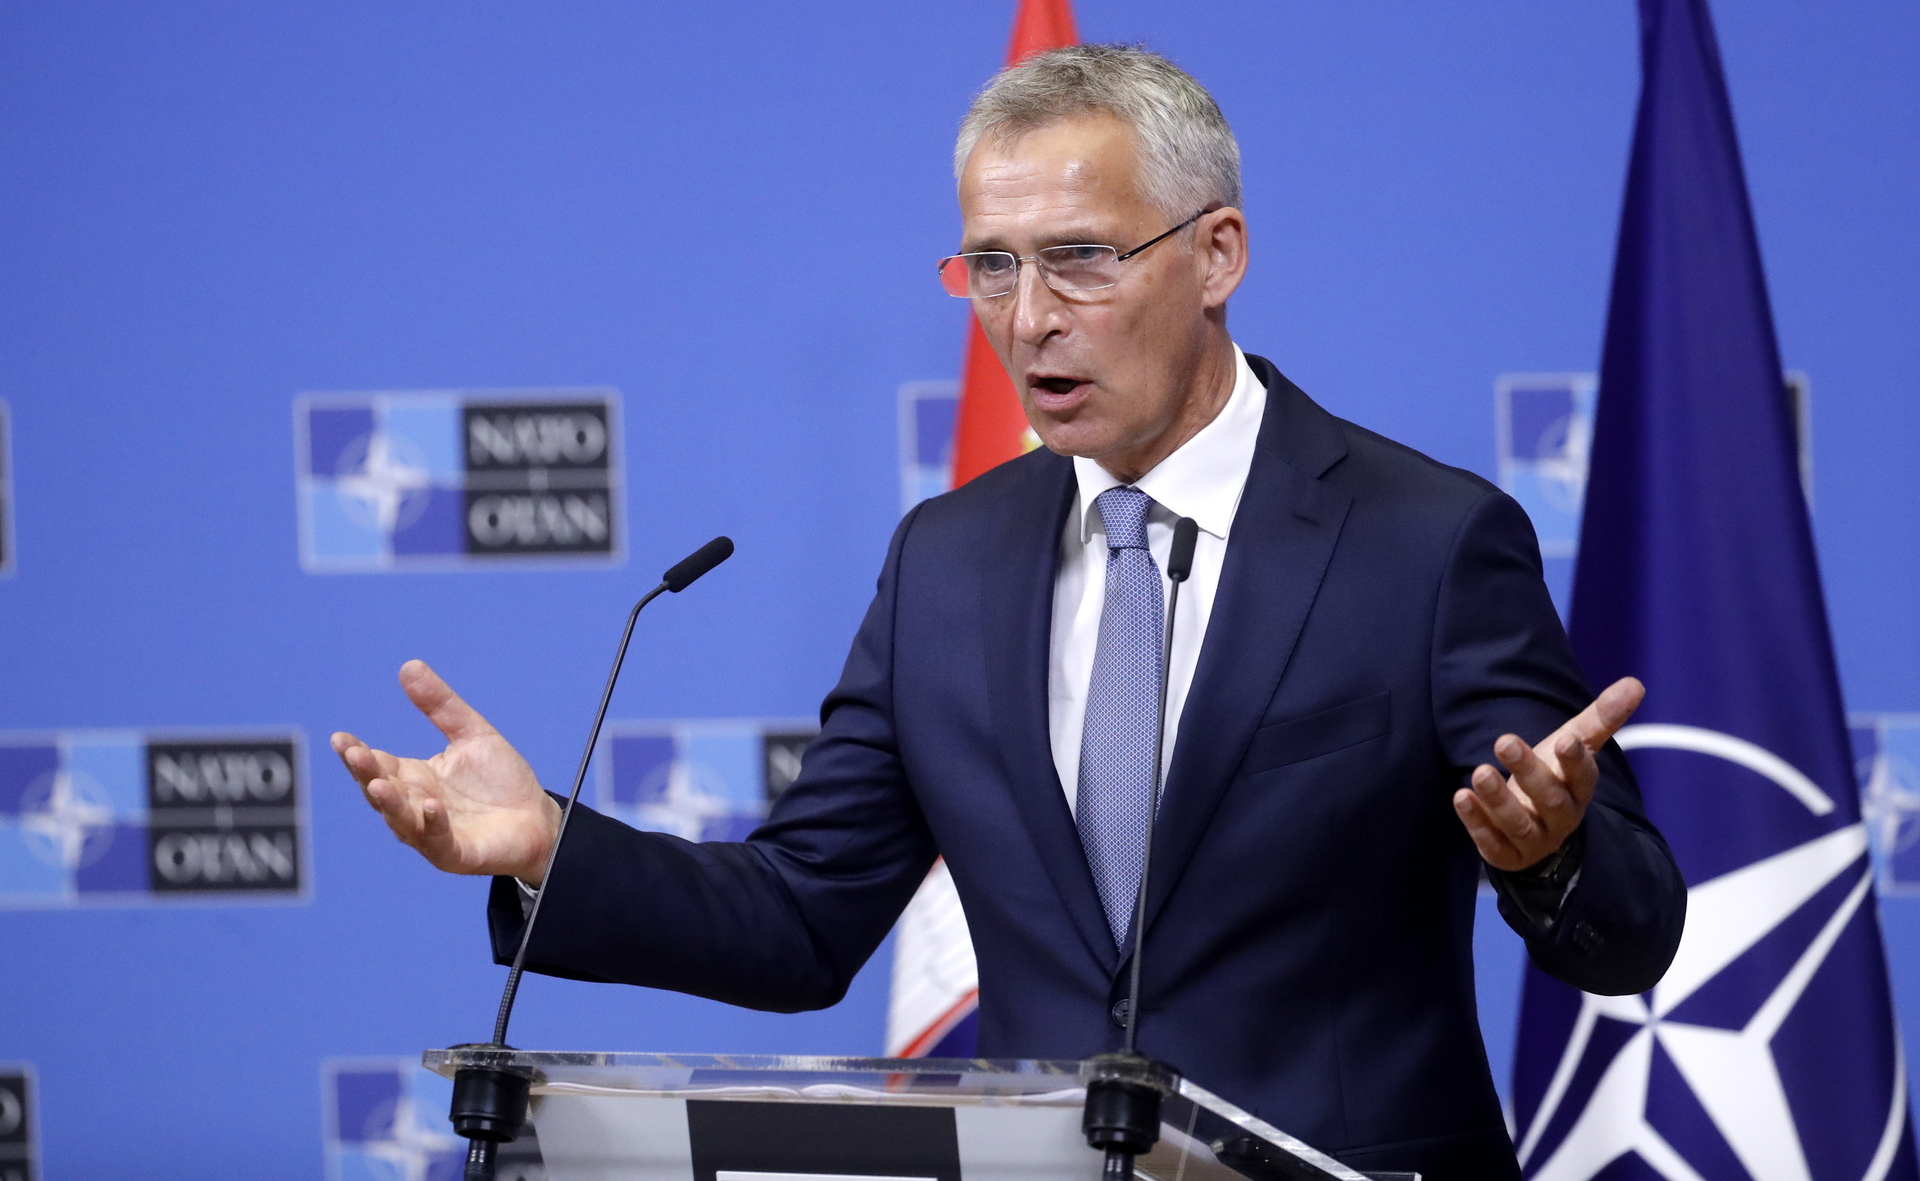 OTAN seguirá atenta a la situación entre Serbia y Kosovo tras su acuerdo: Jens Stoltenberg. Noticias en tiempo real